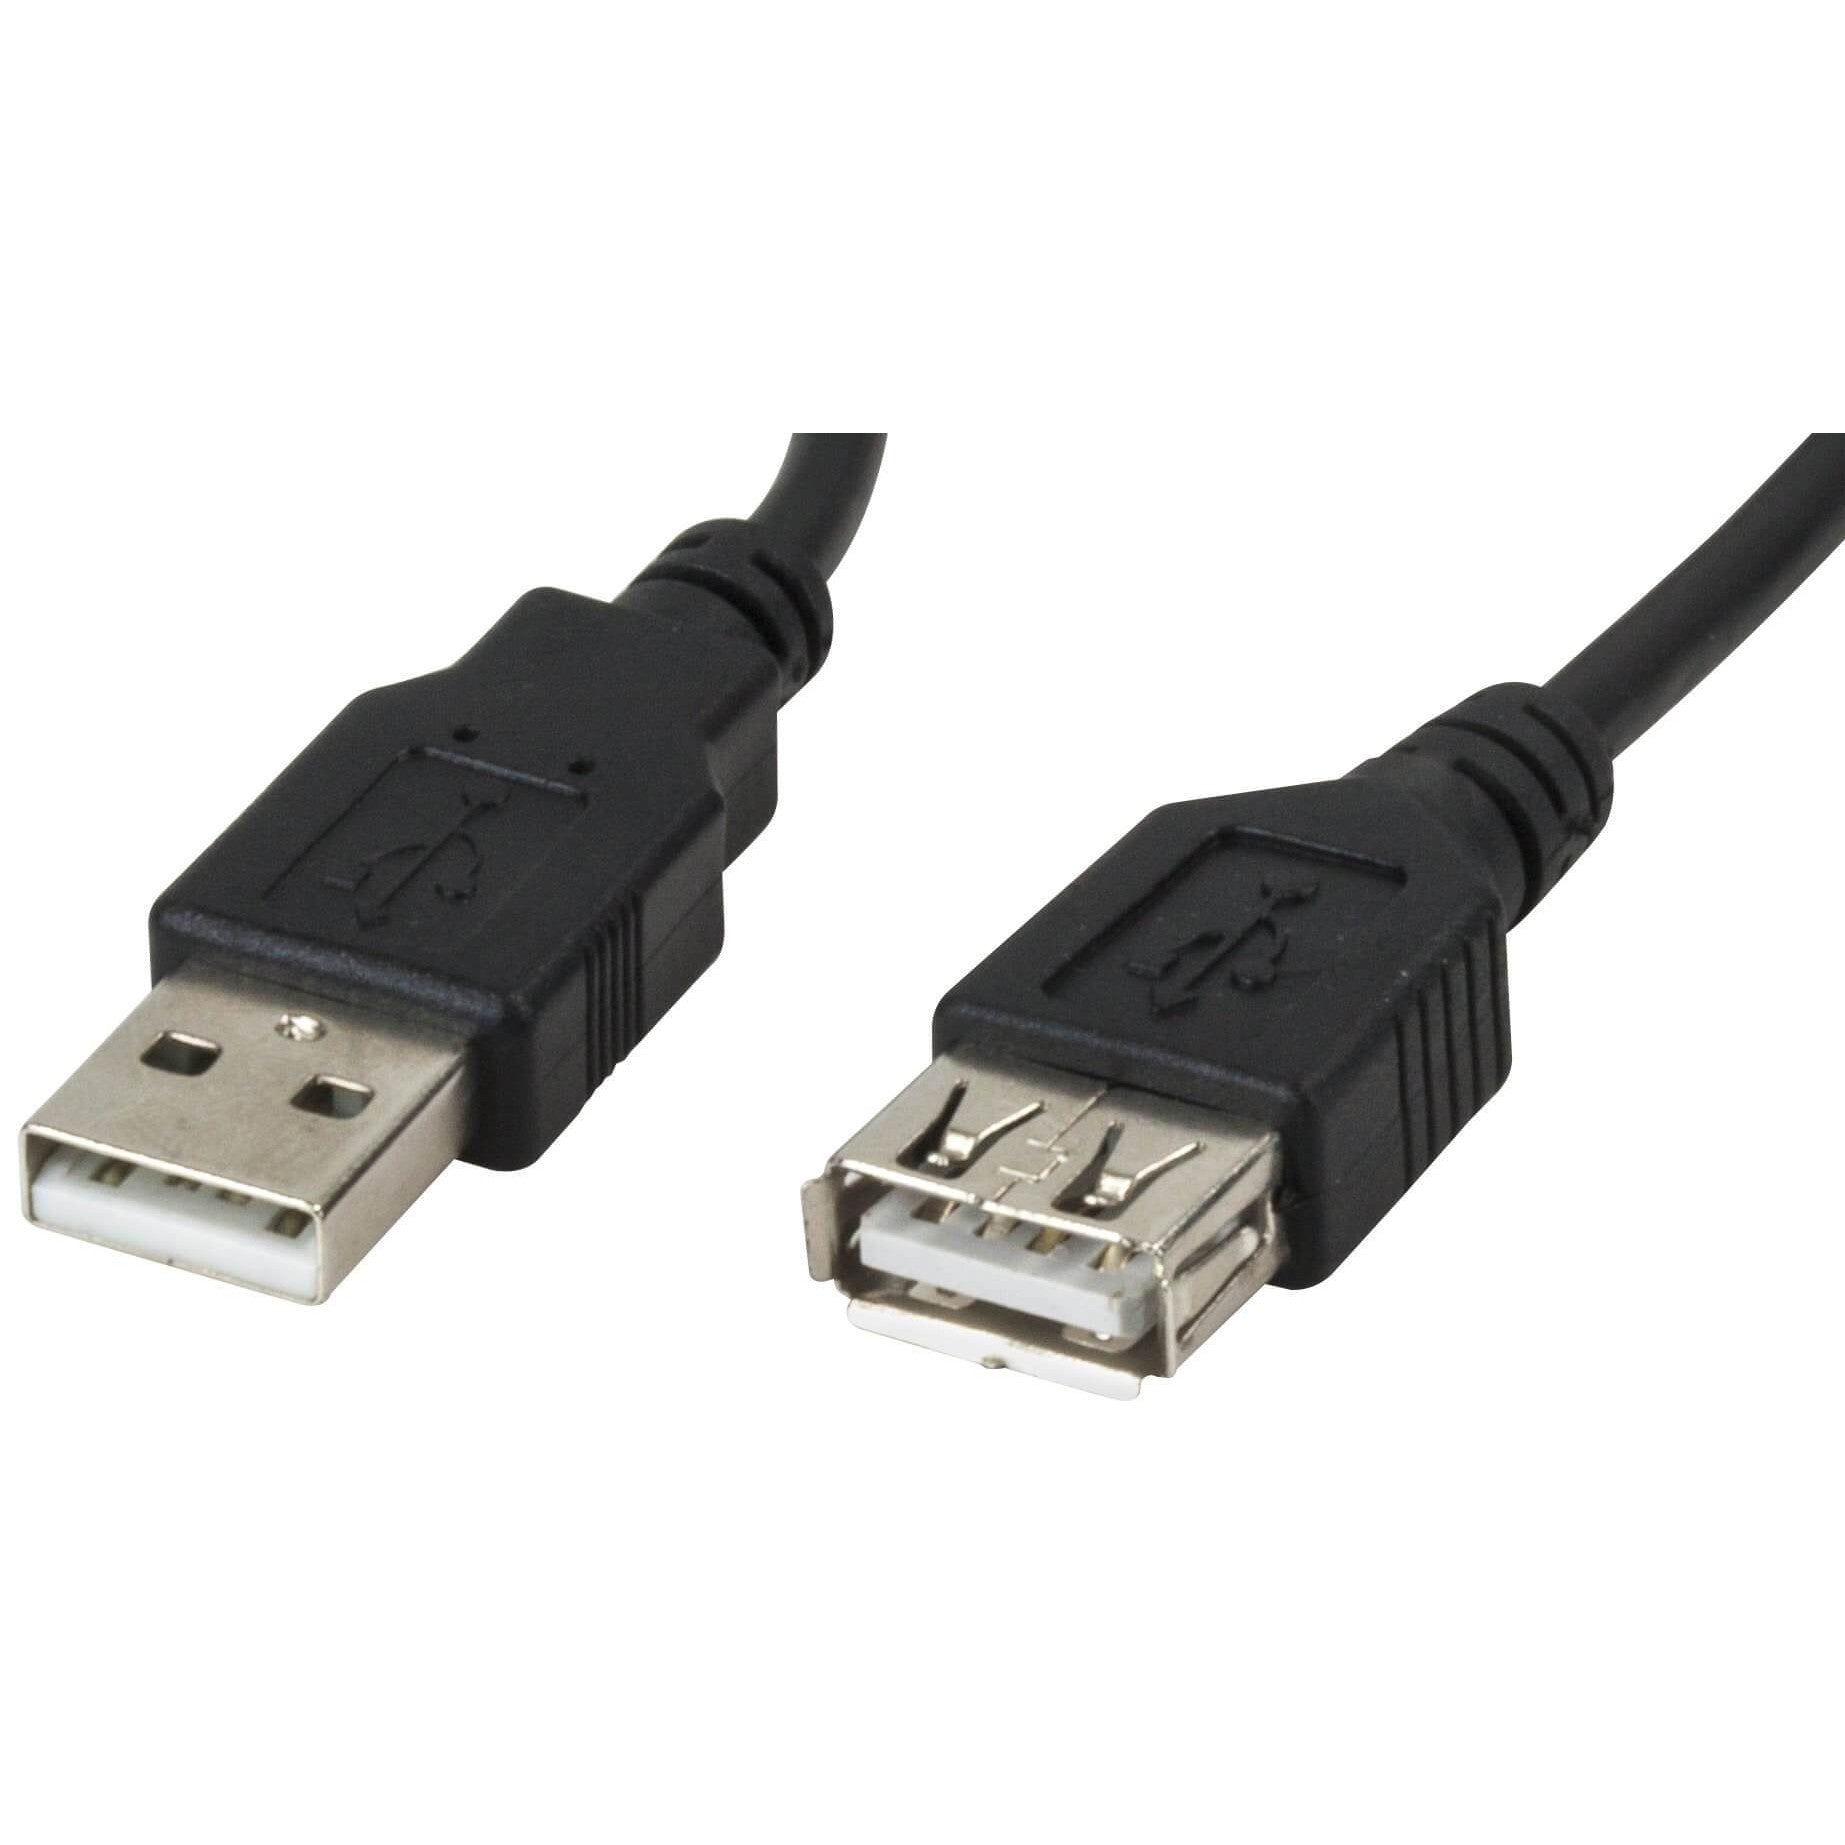 Cable Extensión Xtech XTC-306 USB 2.0 Macho A a Hembra A (4.5 metros)